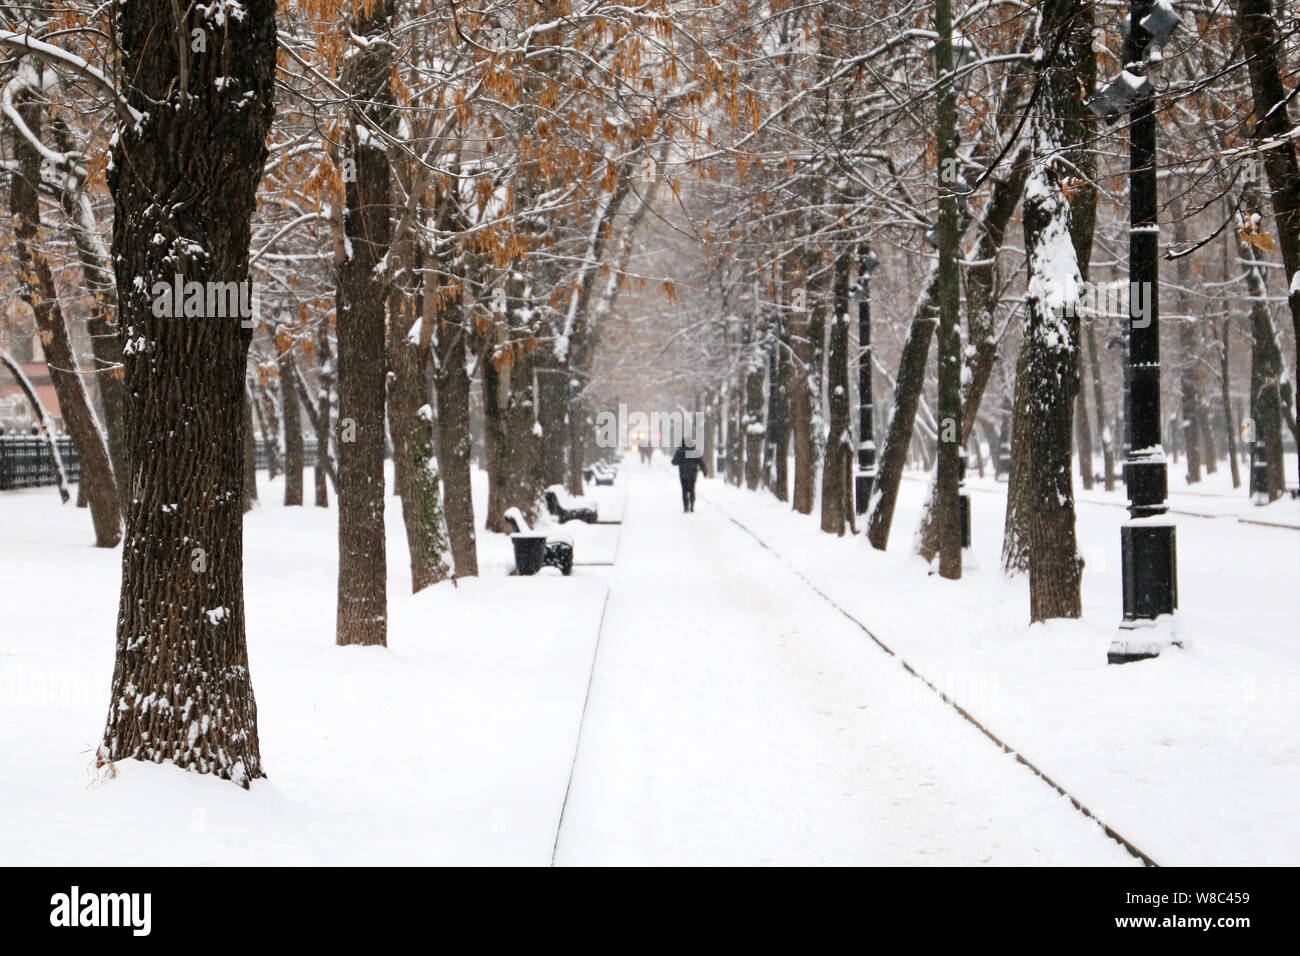 Nieve en City Park, Blizzard y concepto de clima frío. Gente caminando por un sendero cubierto de nieve en invierno, los árboles con hojas secas están cubiertas de nieve Foto de stock